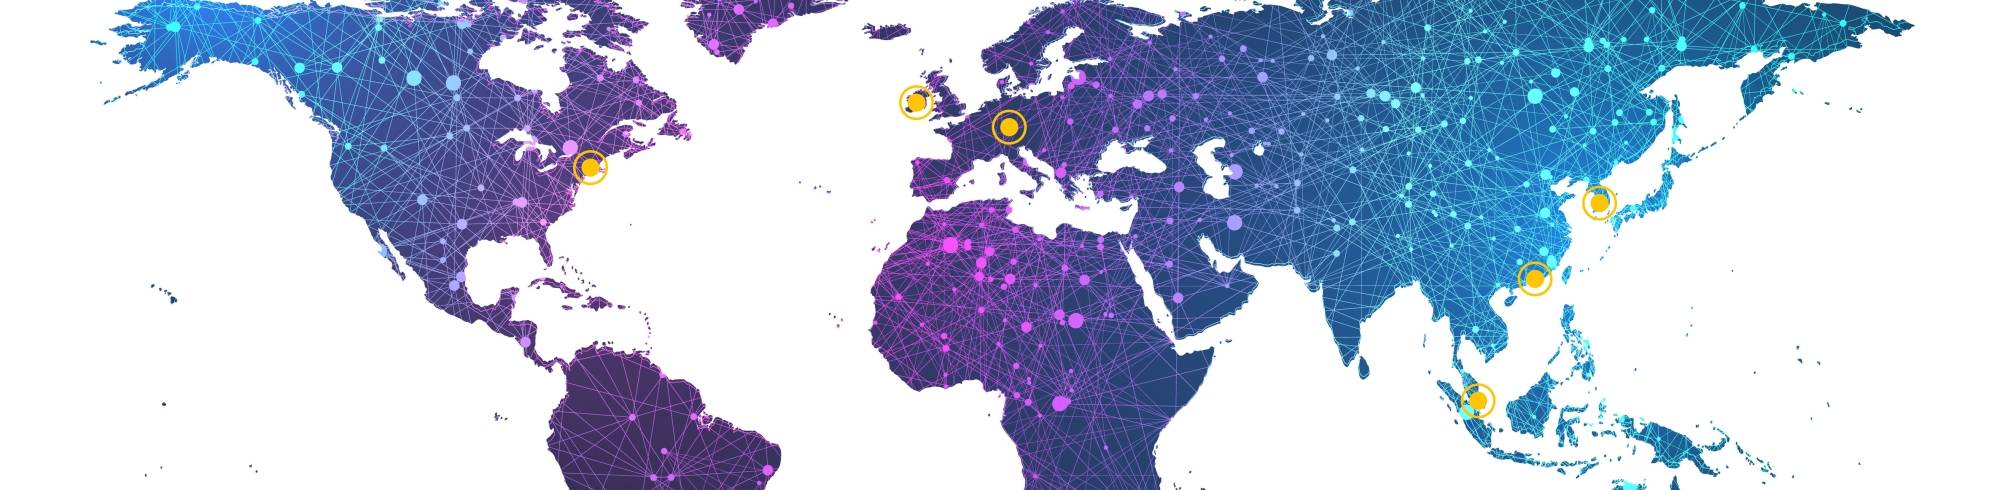 북미, 아시아 및 유럽을 포함한 전 세계 다이맥스 사업장 지도